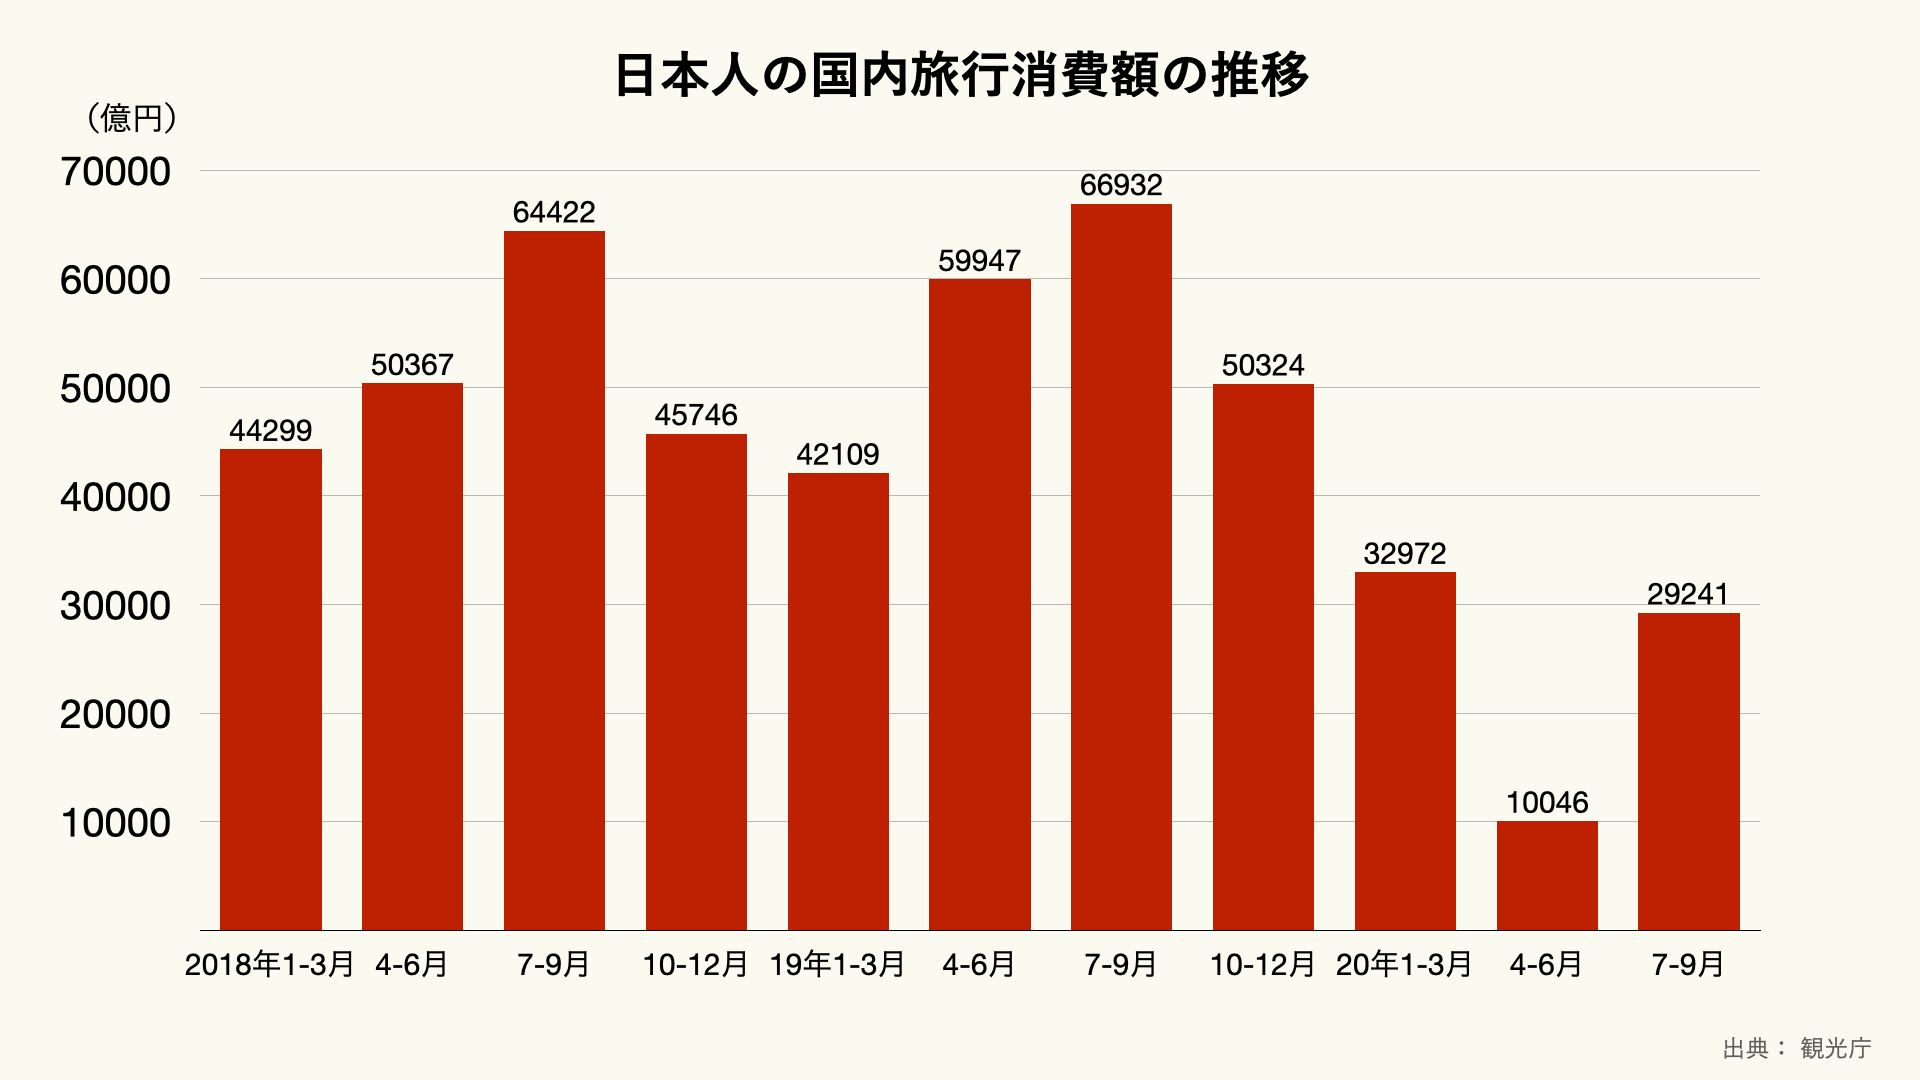 日本人の国内旅行消費額の推移のグラフ